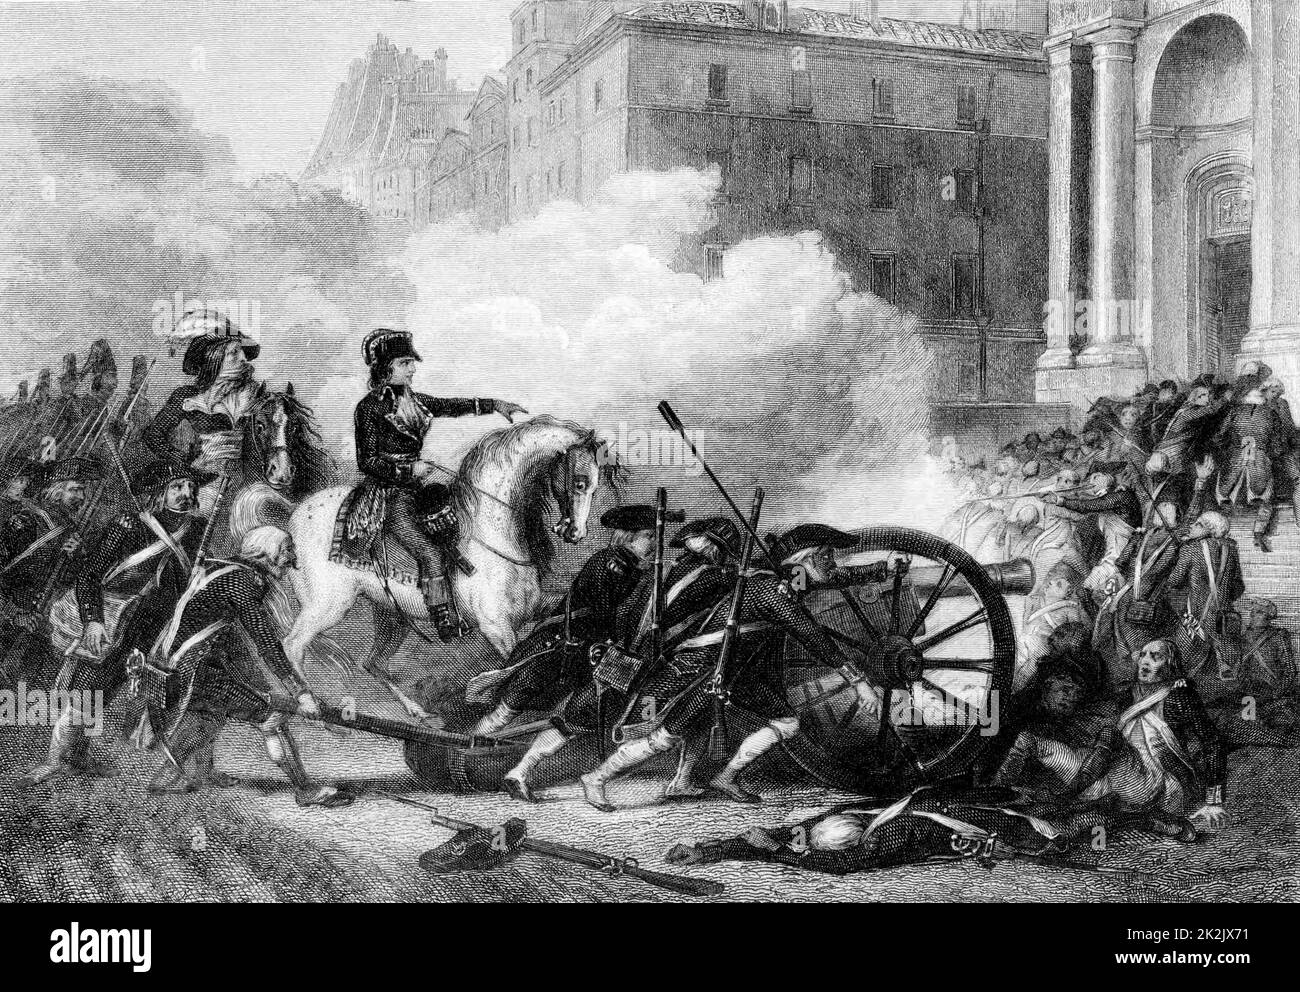 Rivoluzione francese 13th Vendemiaire 1765 (5 ottobre). Il giovane ufficiale repubblicano Napoleone Bonaparte ordina di sparare contro i controrivoluzionari di Parigi. Ci saranno 300 morti sui gradini di Eglise Saint-Roch. Incisione Foto Stock